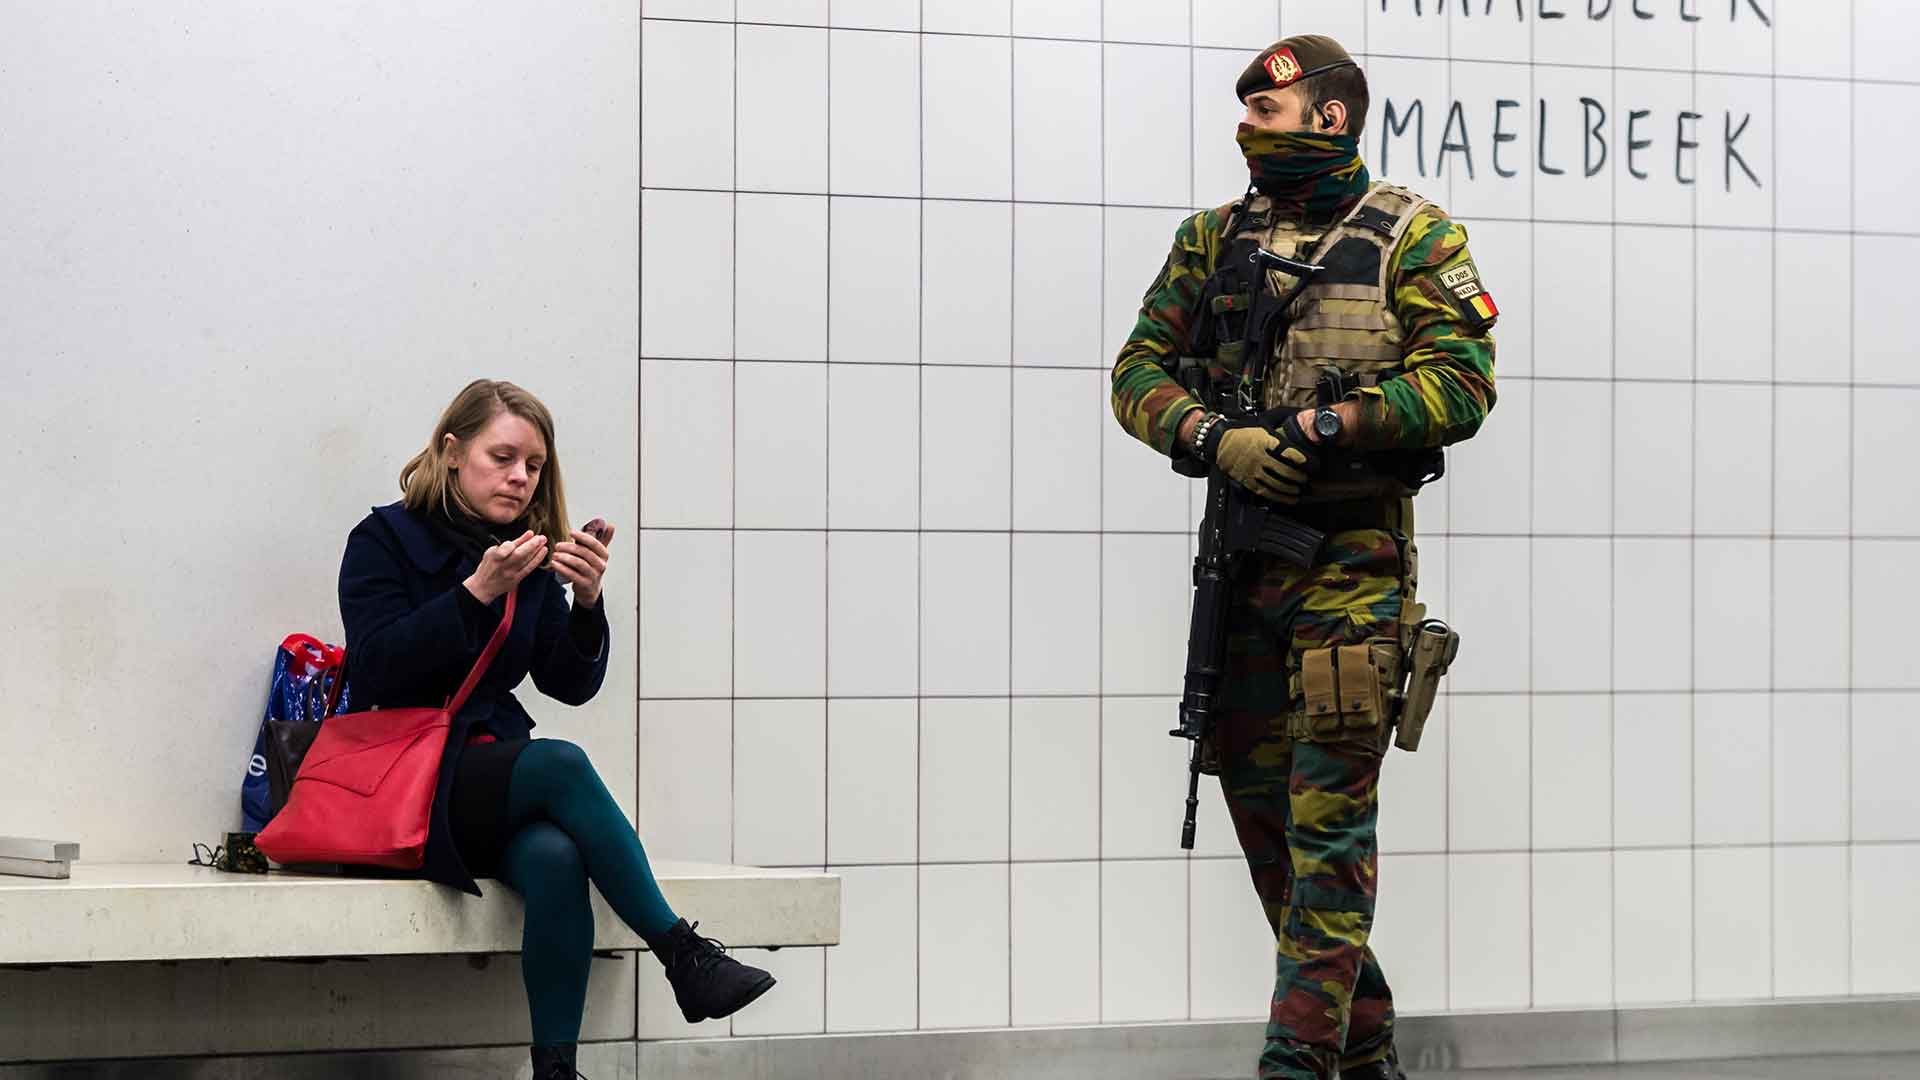 Bélgica reduce su alerta terrorista a niveles de 2015